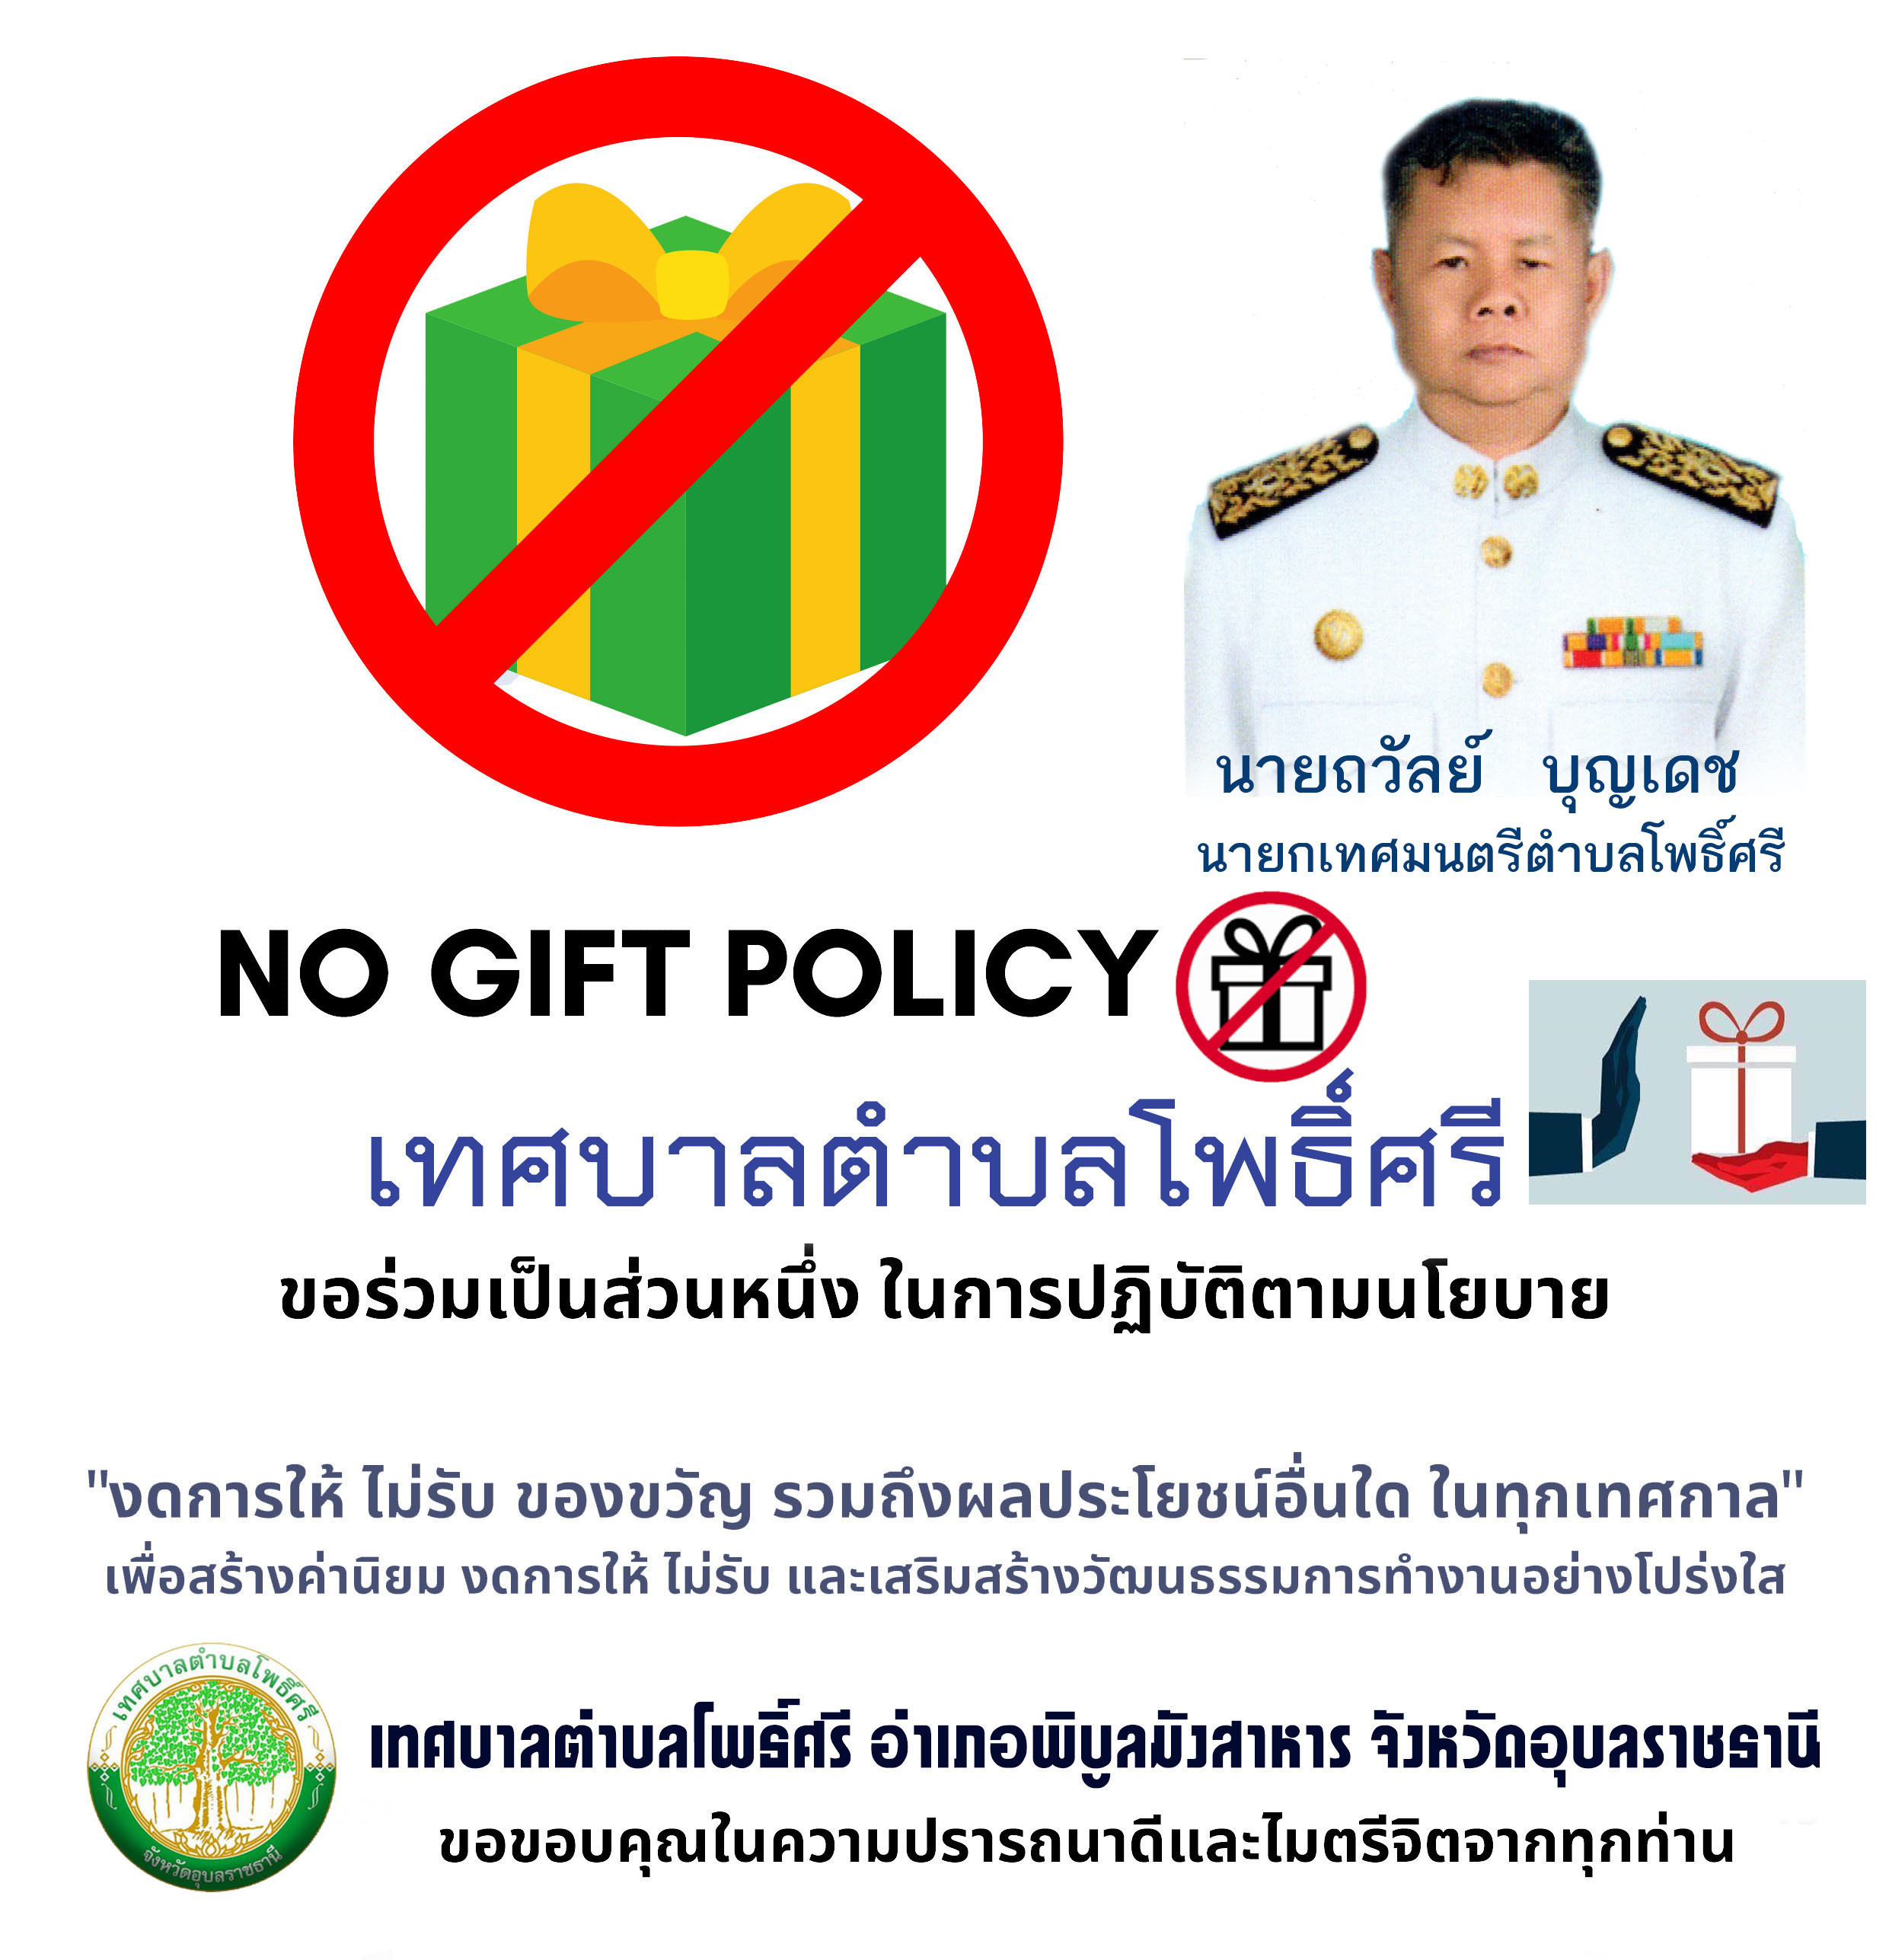 ประกาศเทศบาลตำบลโพธิ์ศรี เรื่อง นโยบายไม่รับของขวัญ (No Gift Policy